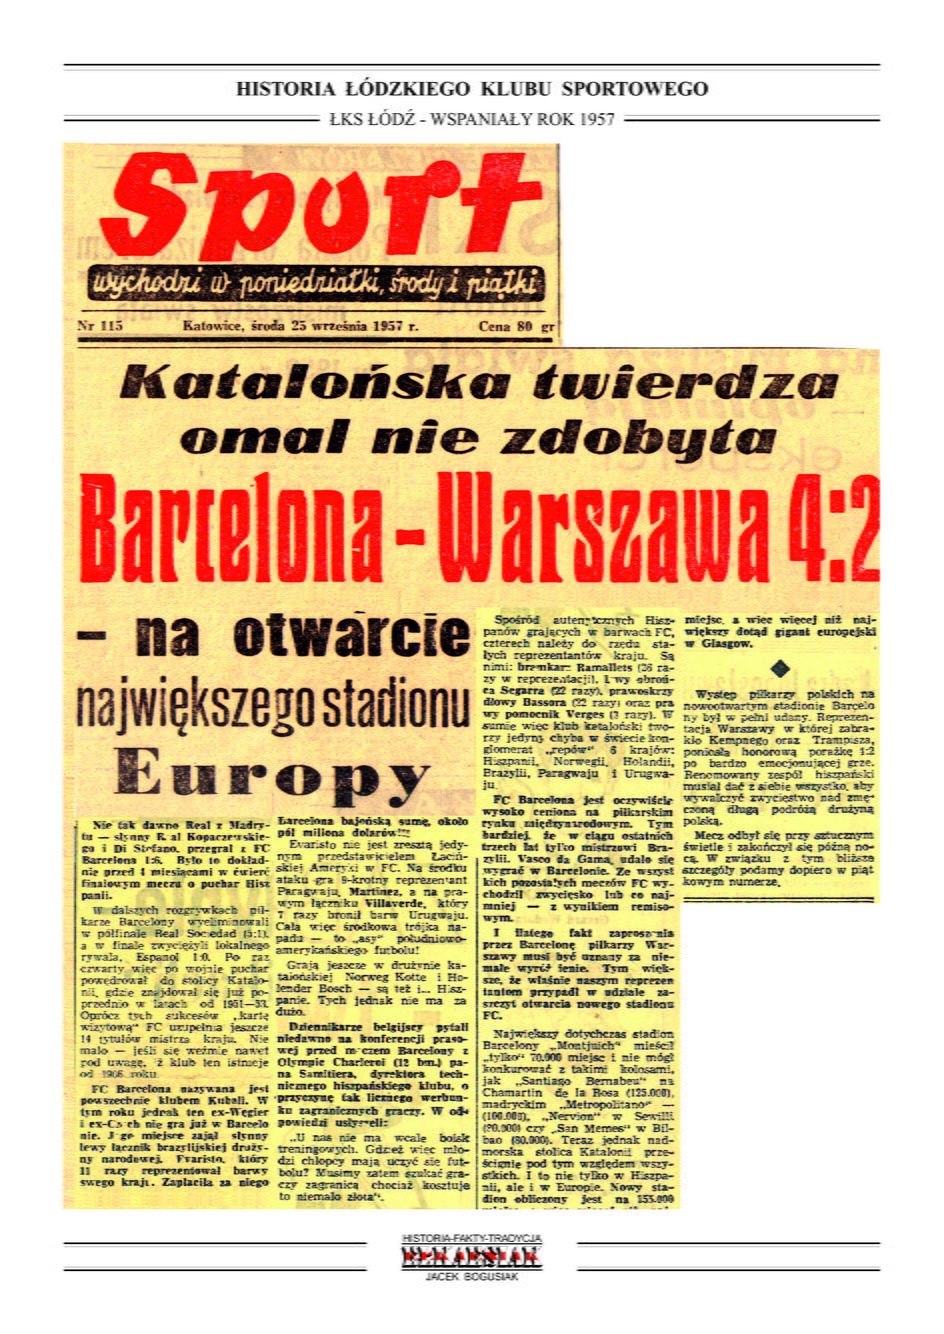 Okładka katowickiego "Sportu" po meczu FC Barcelona - Reprezentacja Warszawy